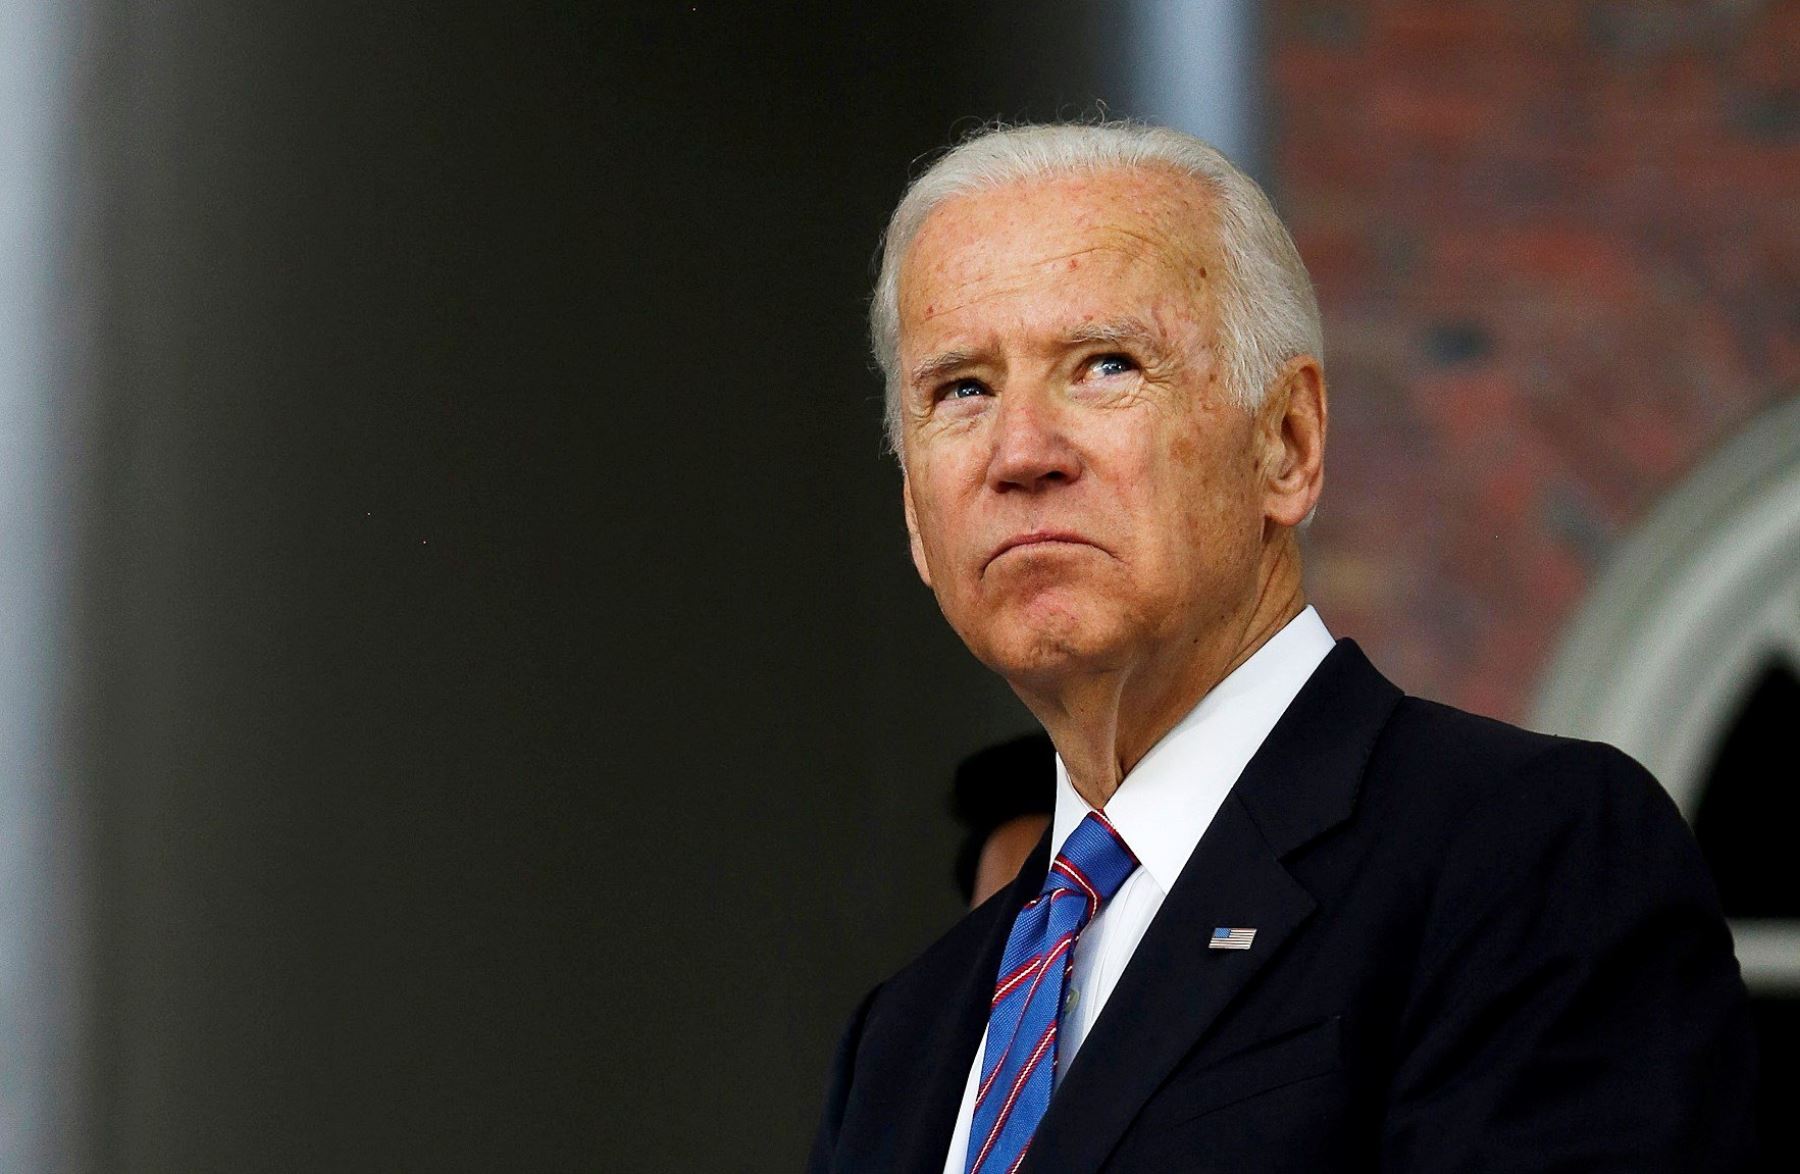 Foto de archivo que muestra al exvicepresidente estadounidense, Joe Biden,luego de pronunciar un discurso en la Universidad de Harvard Foto: AFP